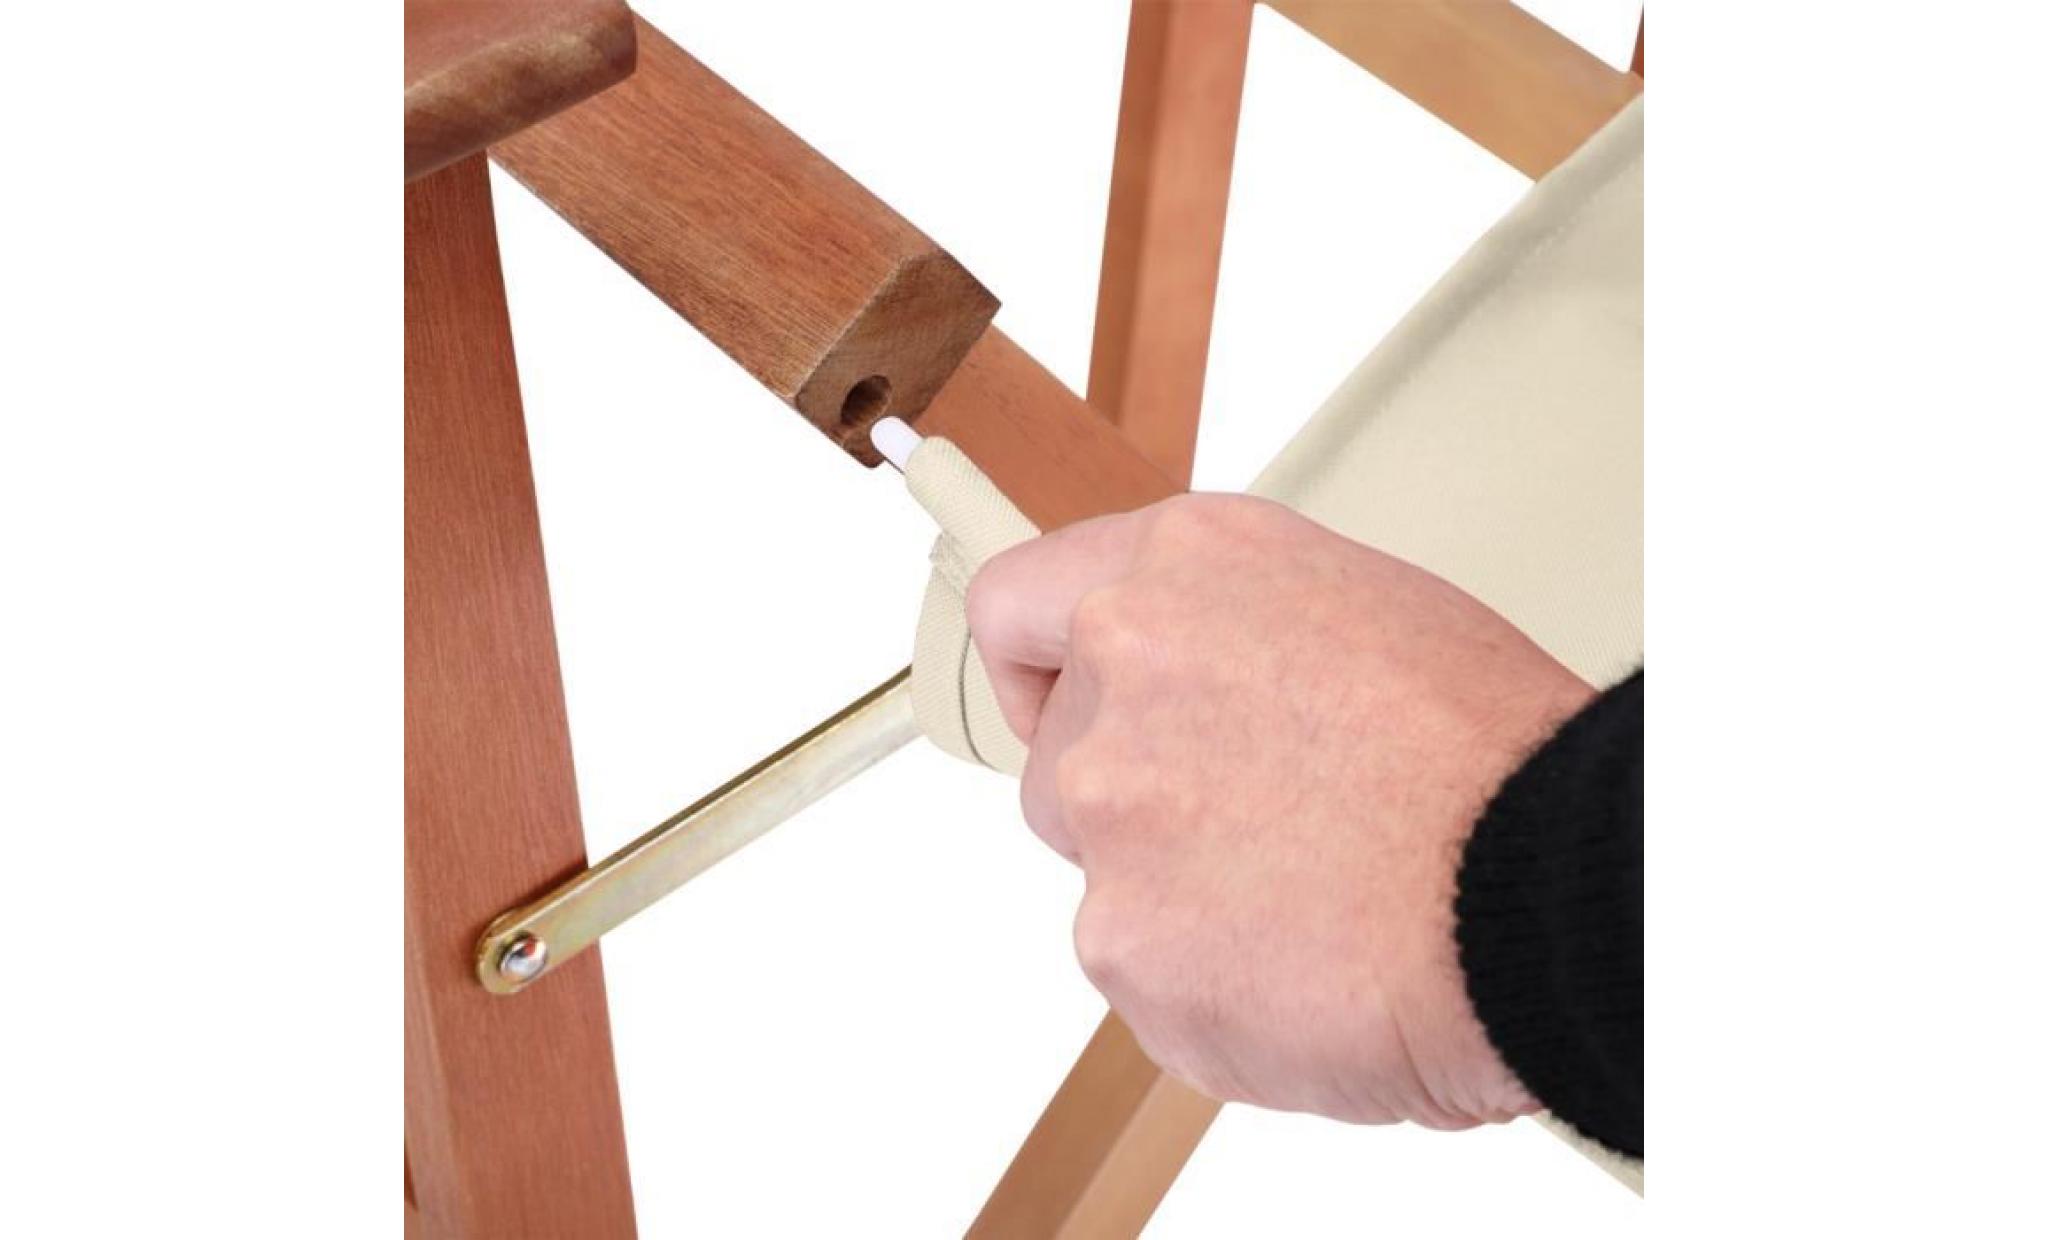 deuba| 2x chaises de jardin « cannes » | beige | pliable • bois d'eucalyptus certifié fsc® • design réalisateur | fauteuils pas cher